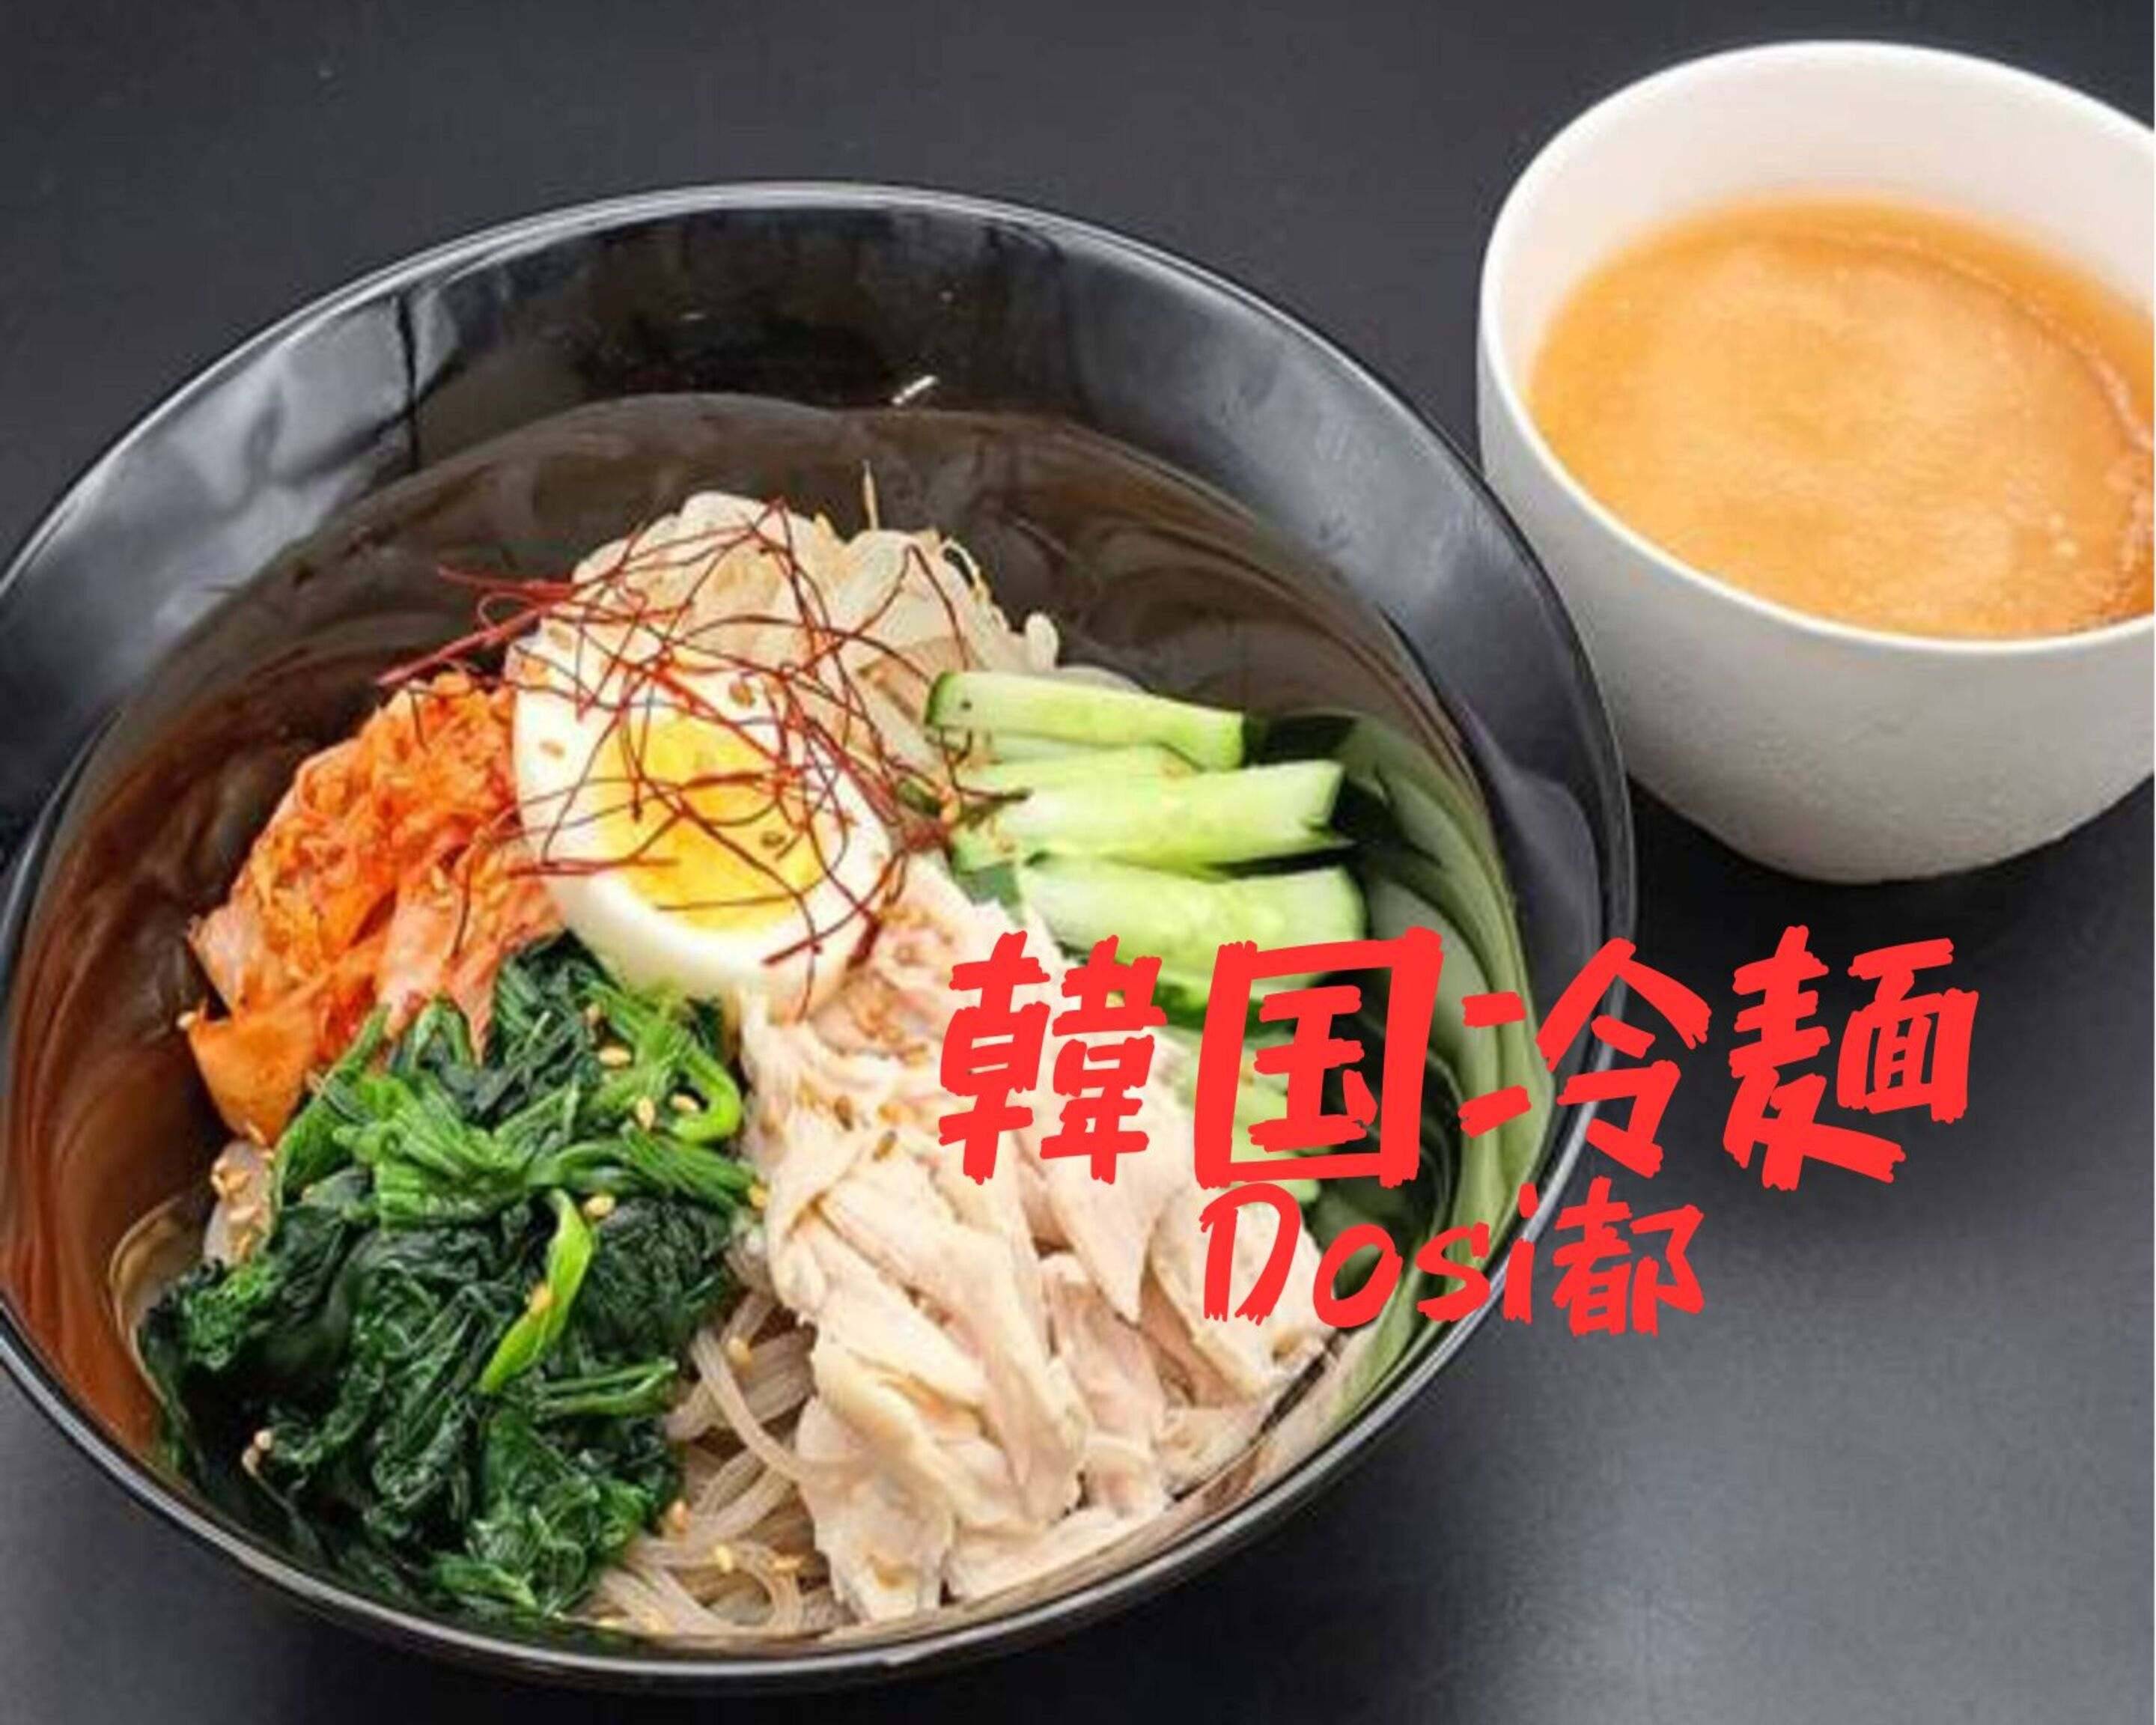 韓国冷麺Dosi都 用賀店の出前・宅配・テイクアウトメニュー | ウーバーイーツ